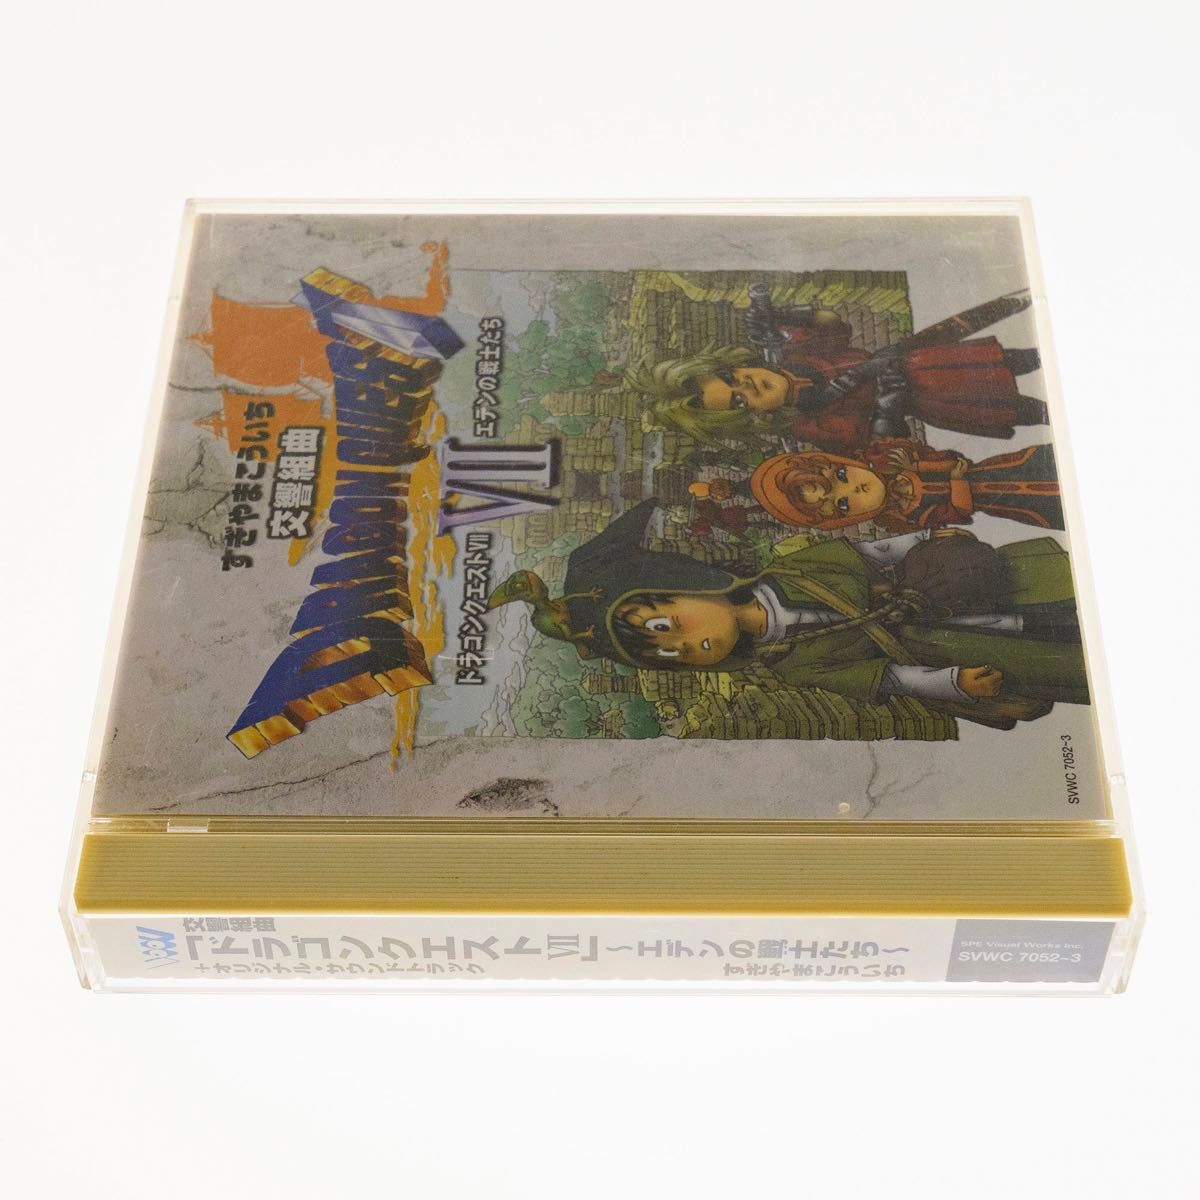 【CD2枚組】交響組曲 ドラゴンクエストVII エデンの戦士たち SVWC-7052〜3 ロンドン・フィルハーモニー管弦楽団